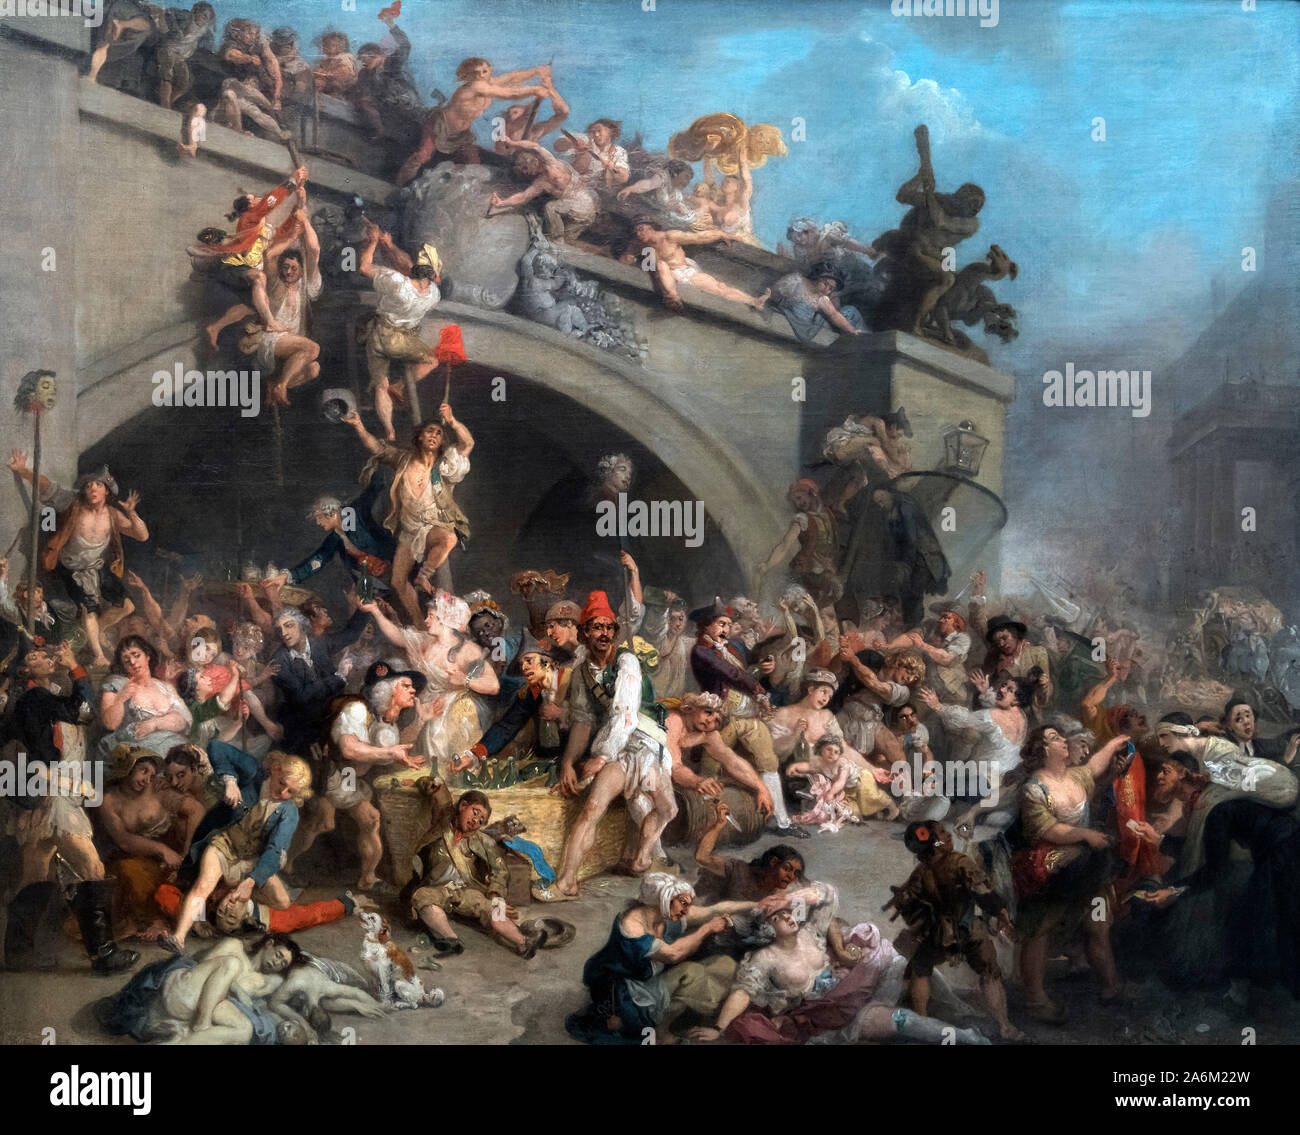 Il saccheggio del Re della cantina a Parigi da Johann Zoffany (1733-1810), olio su tela, c.1793. Il dipinto mostra i cittadini francesi storming il palazzo delle Tuileries nel mese di agosto 1792, durante la Rivoluzione Francese. Foto Stock